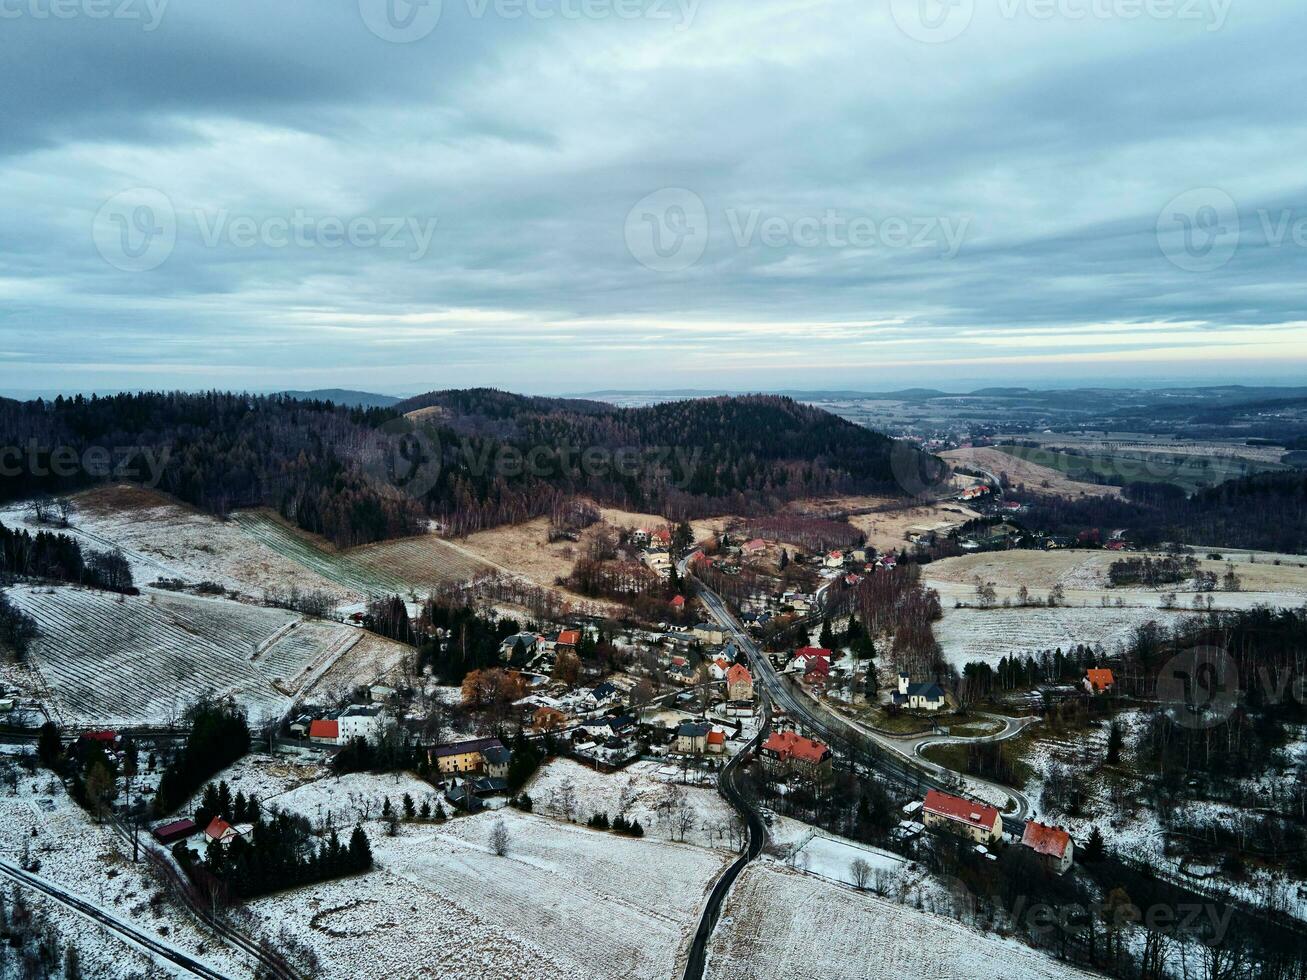 vinter- landskap med mby nära bergen foto